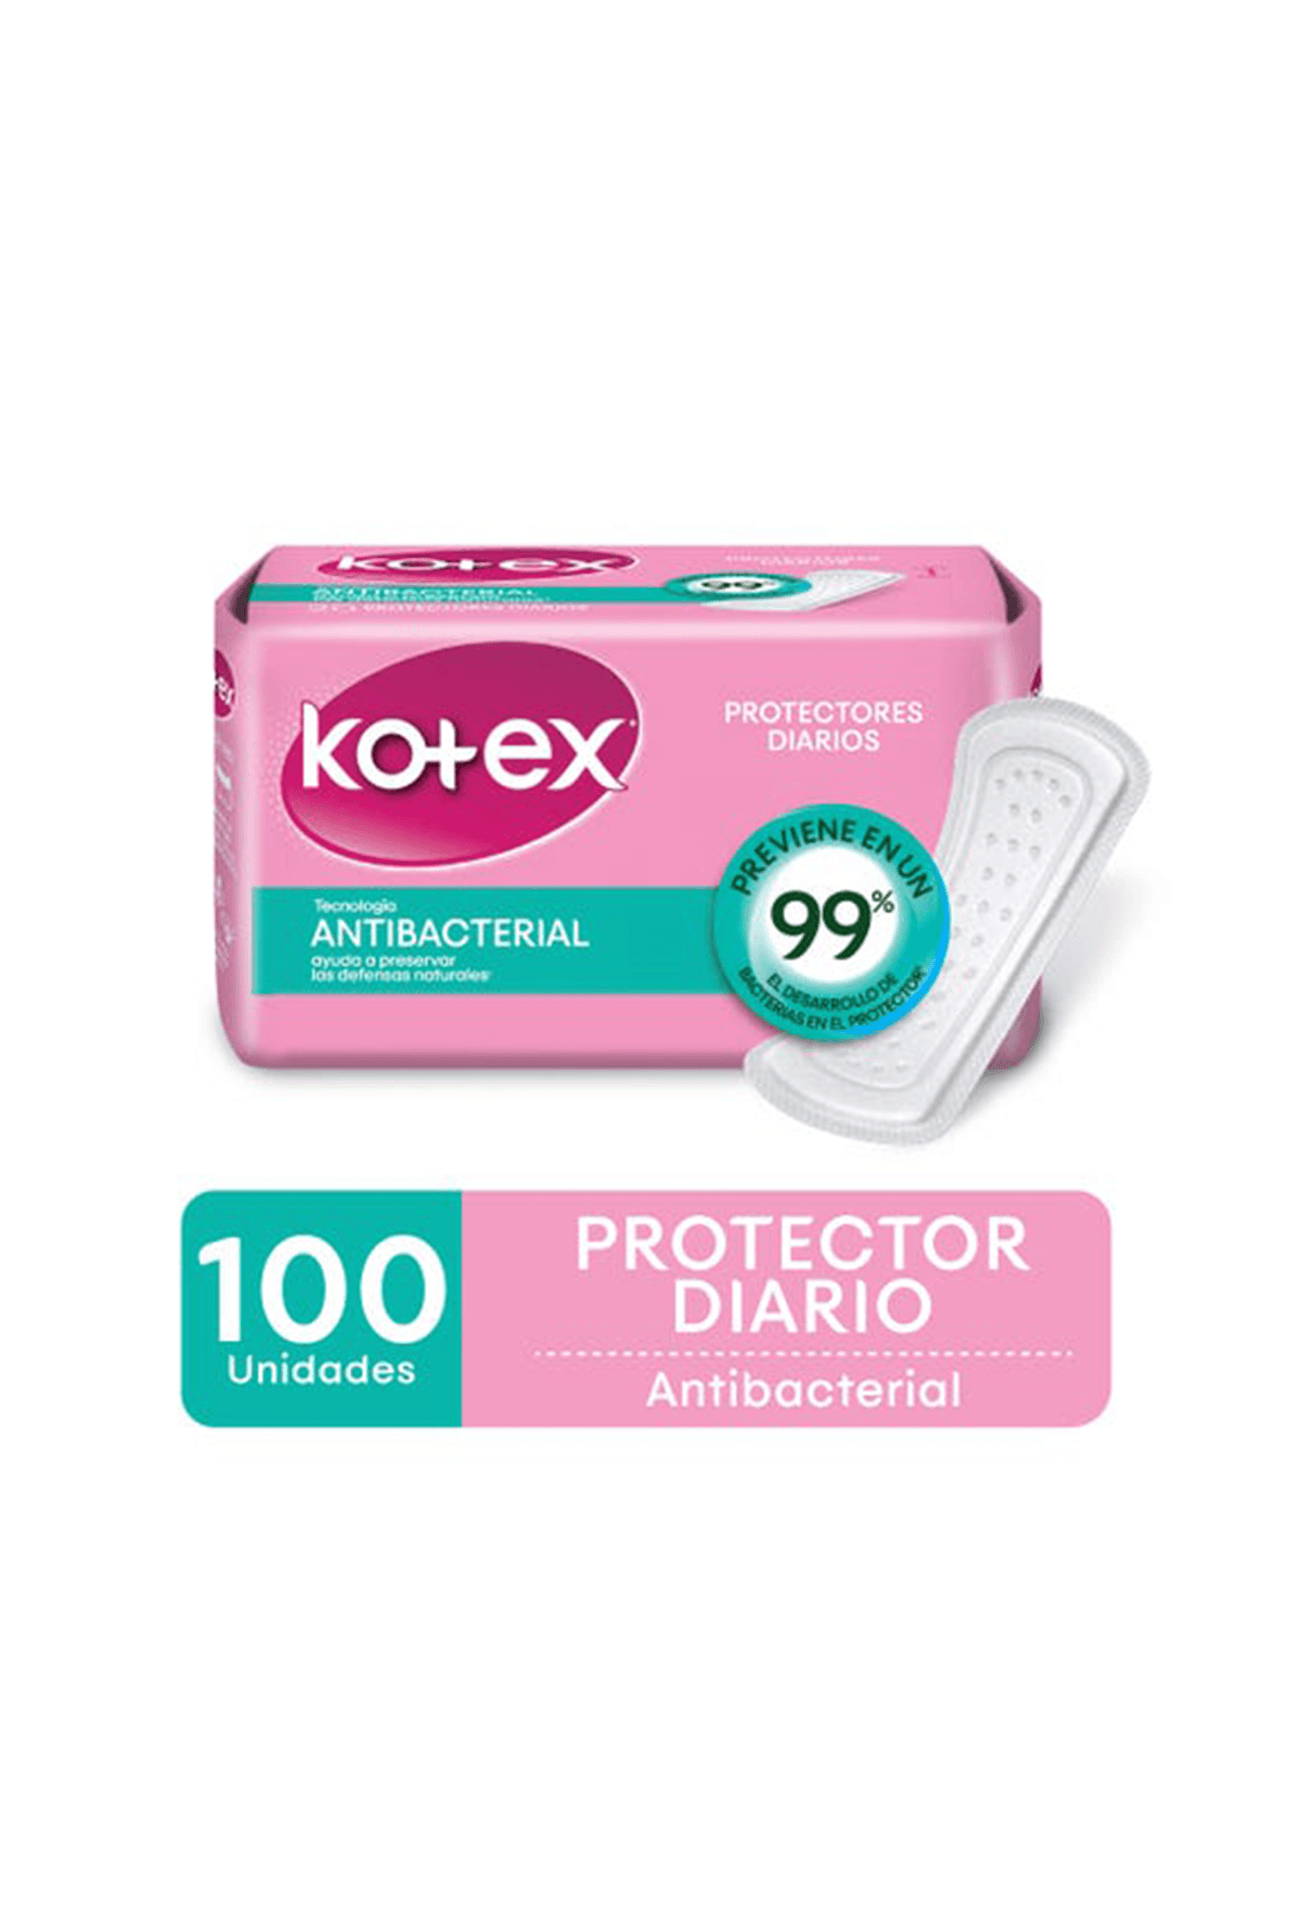 2119527_Kotex-Protectores-Diarios-Antibacterial-Kotex-x-100-uni_img1